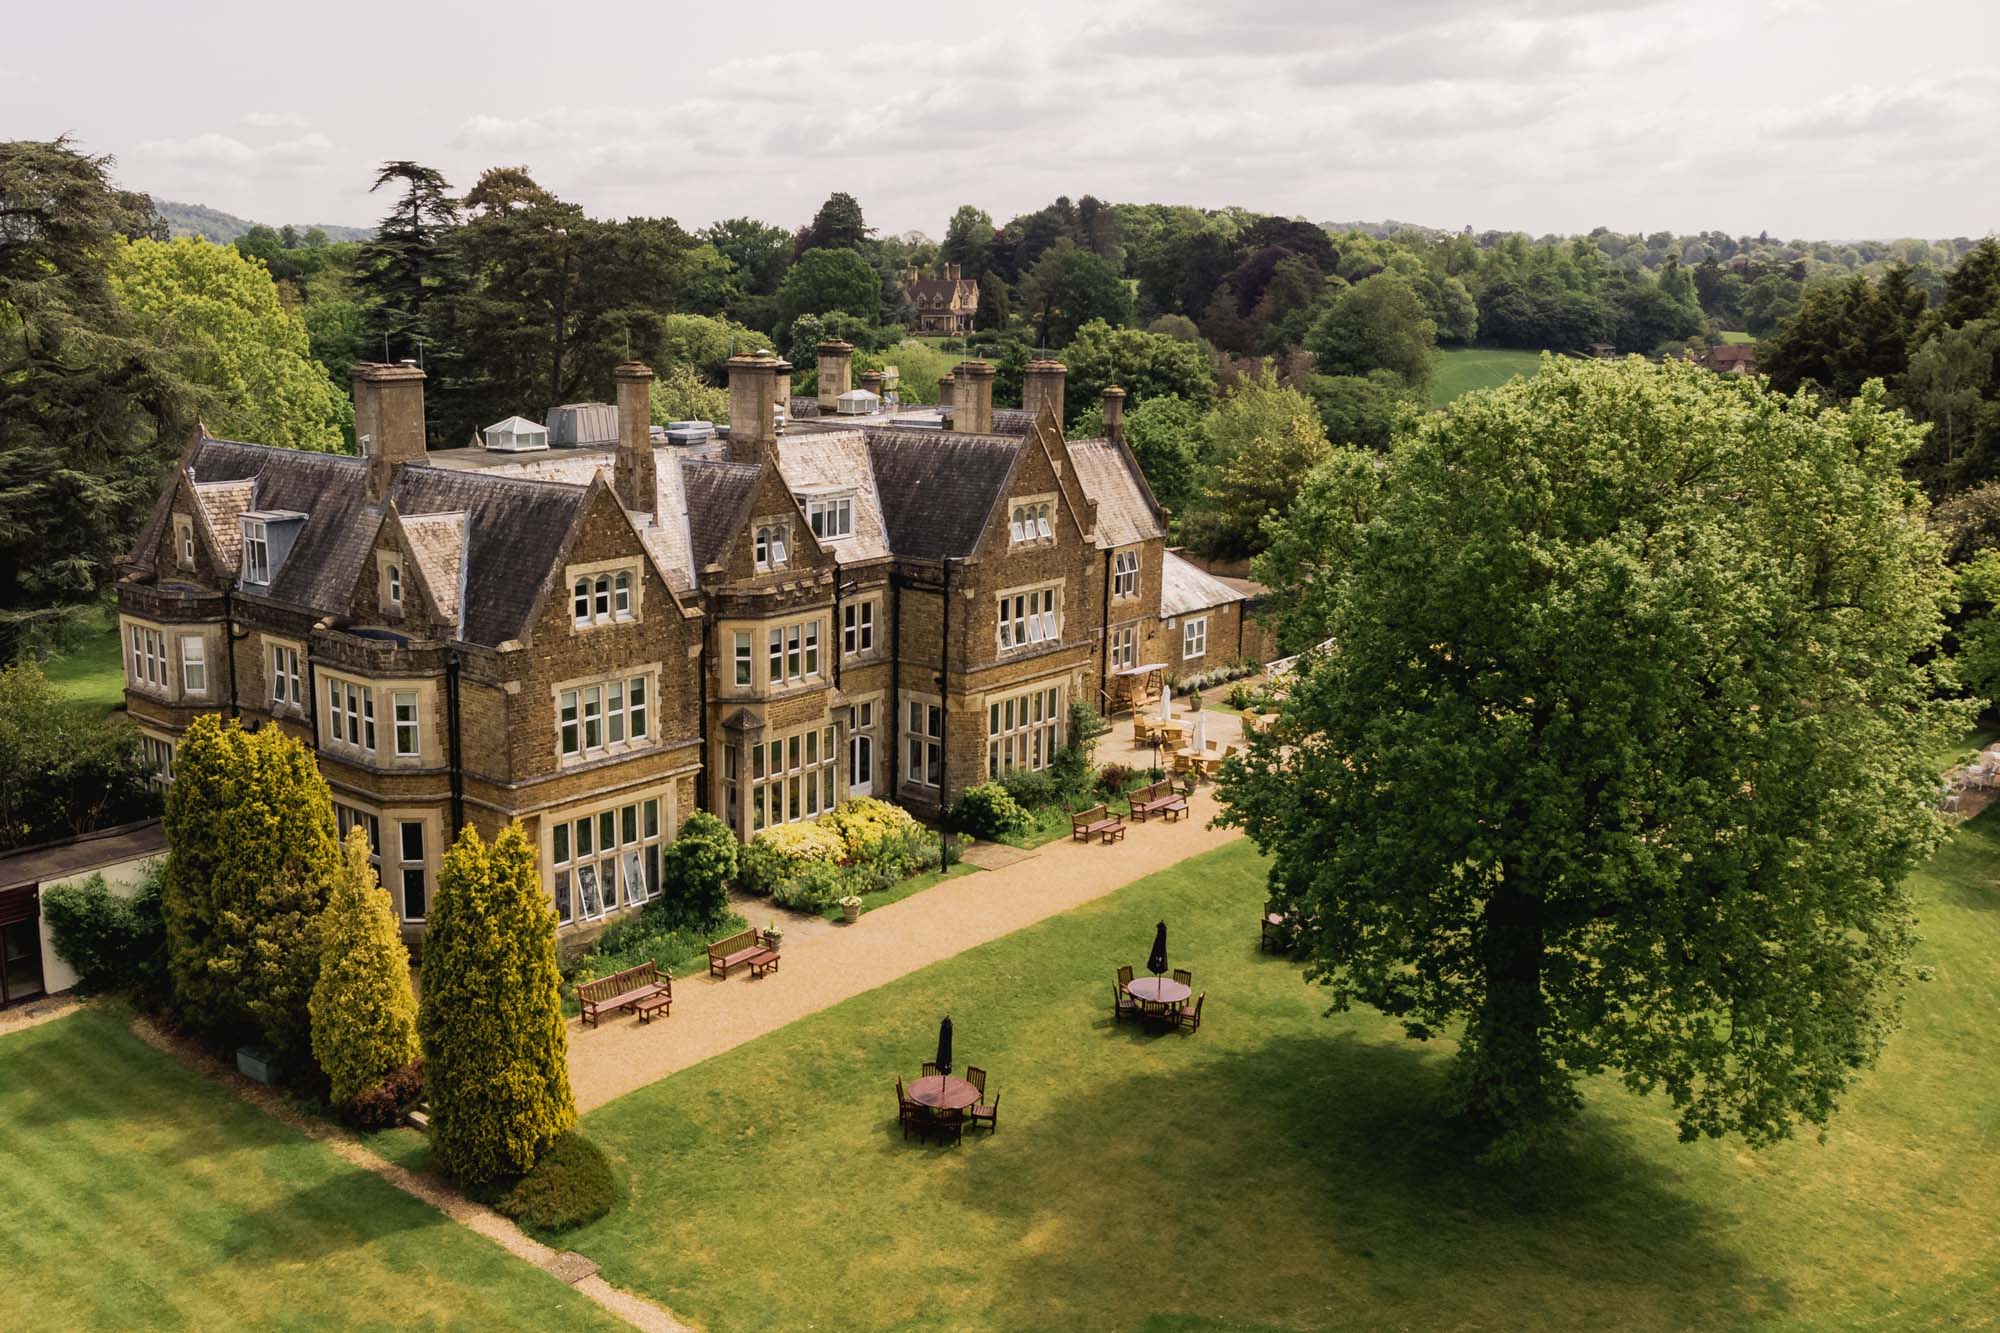 Aerial view of Hartsfield Manor wedding venue in Betchworth, Surrey.